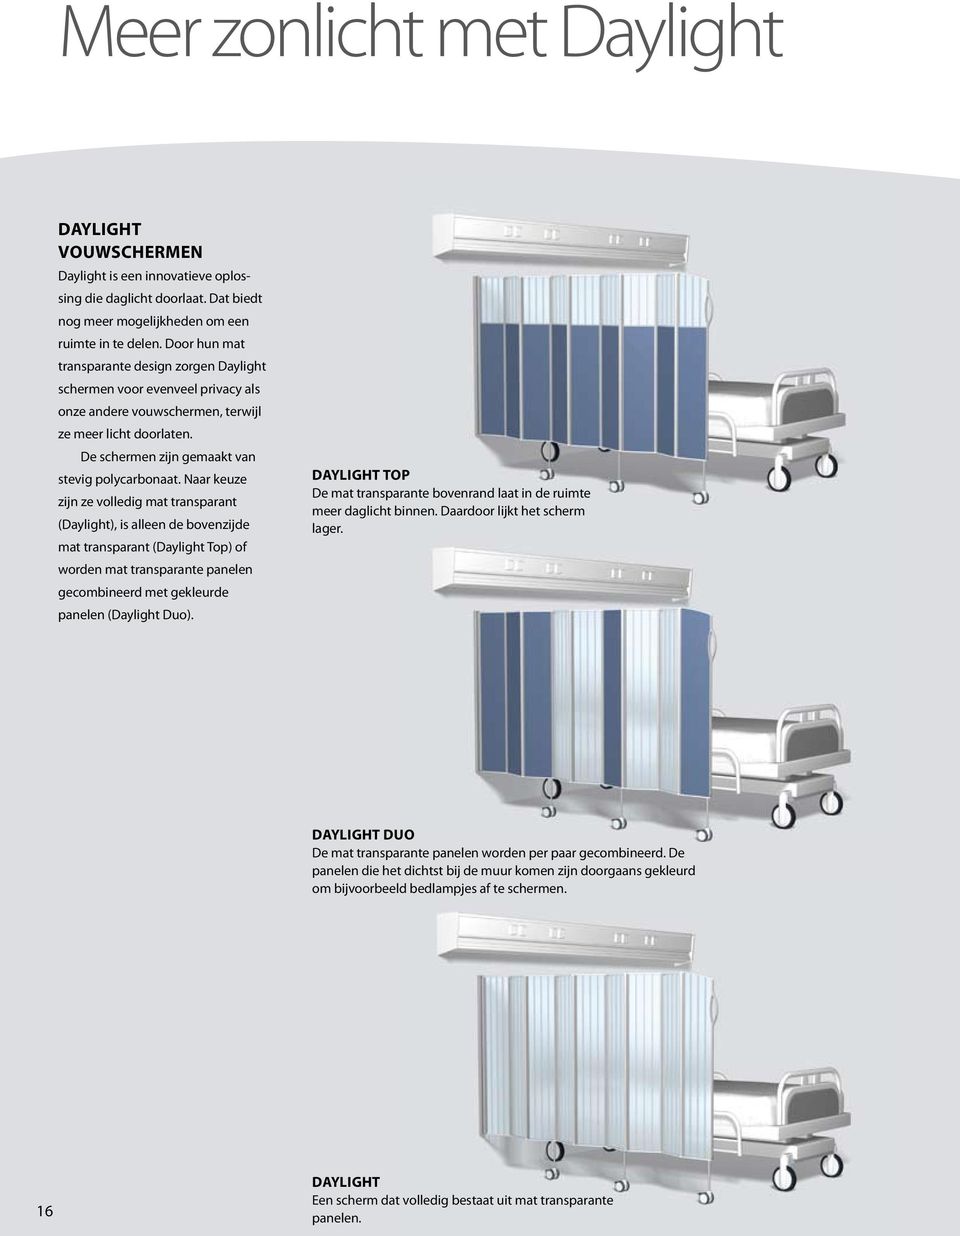 Naar keuze zijn ze volledig mat transparant (Daylight), is alleen de bovenzijde mat transparant (Daylight Top) of worden mat transparante panelen gecombineerd met gekleurde panelen (Daylight Duo).